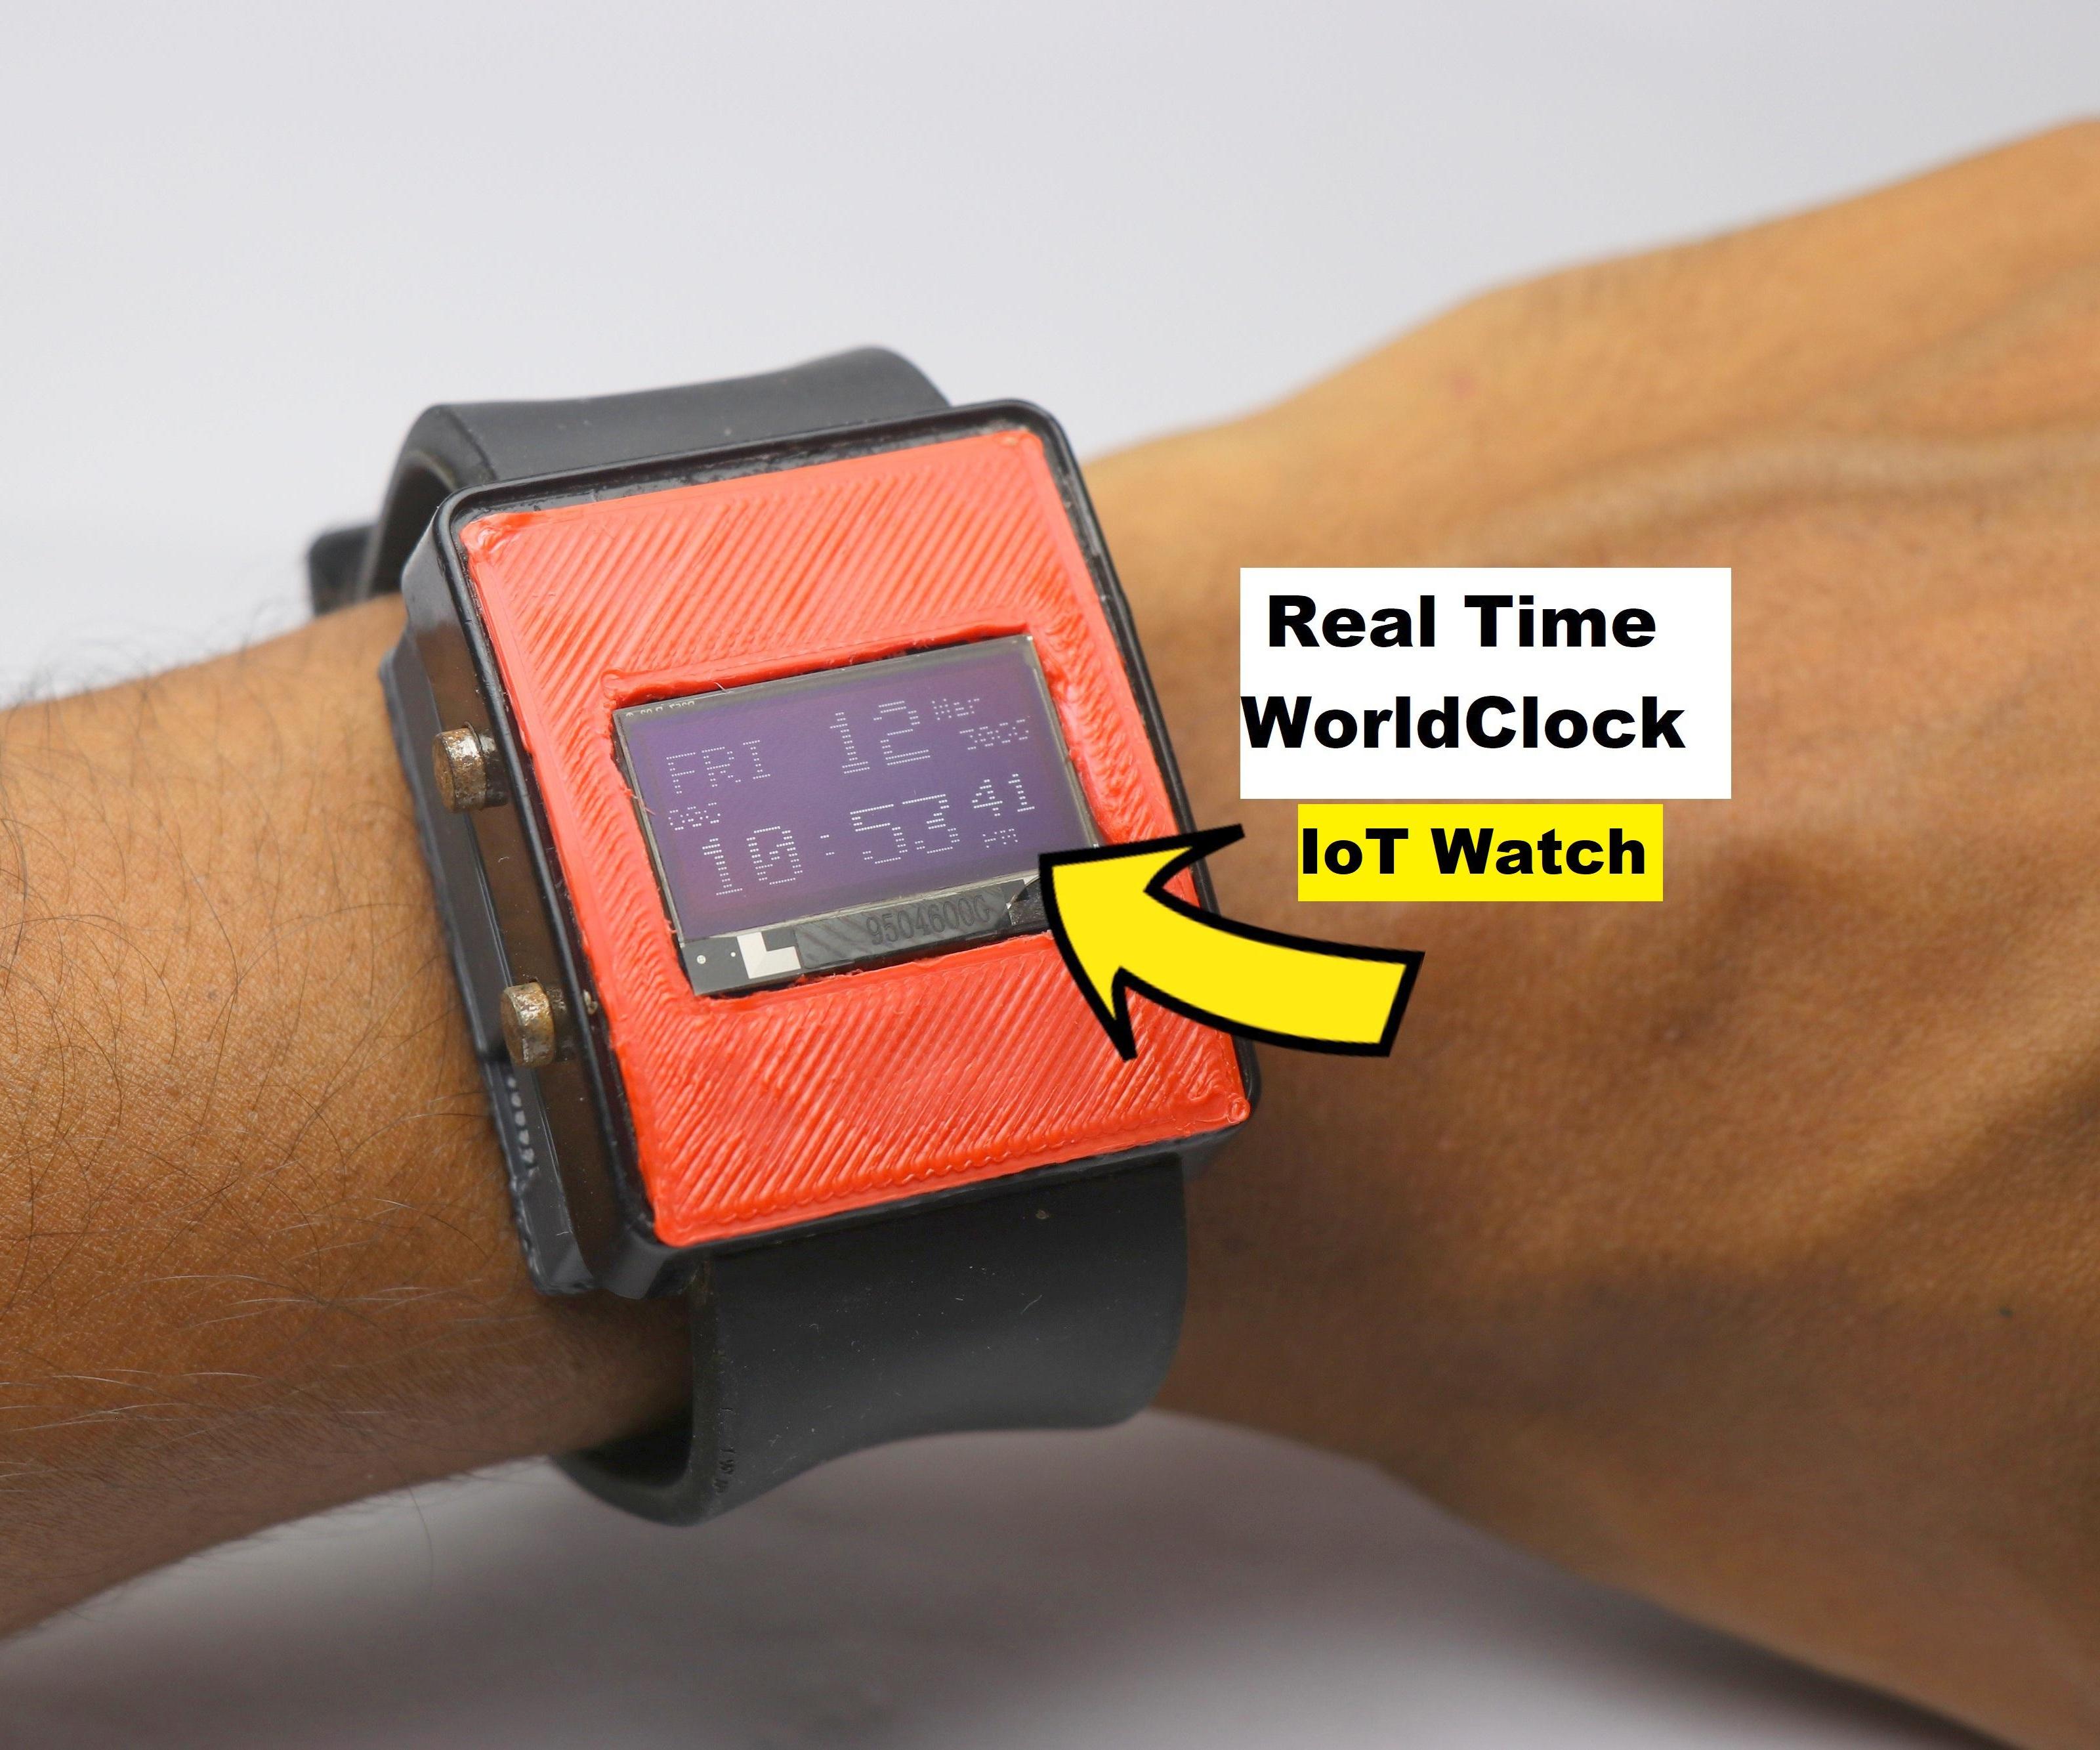 Fix Broken Watch and Convert It Into IoT Smart Clock Watch